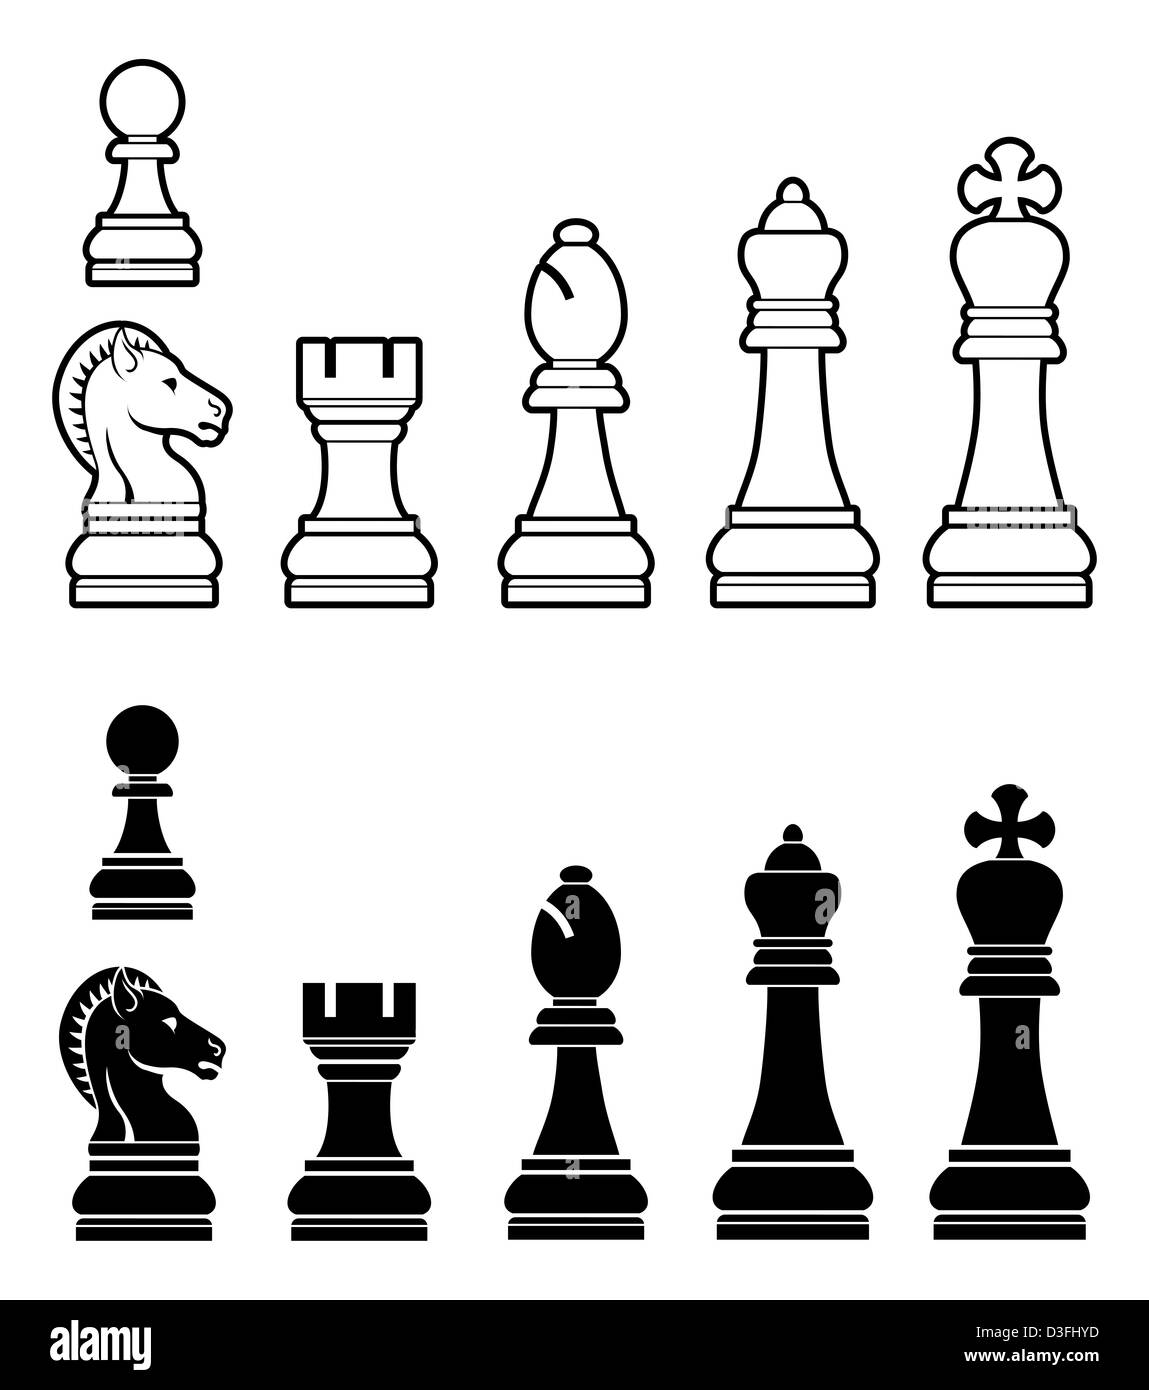 Une illustration d'un jeu complet de pièces d'échecs en noir et blanc Banque D'Images